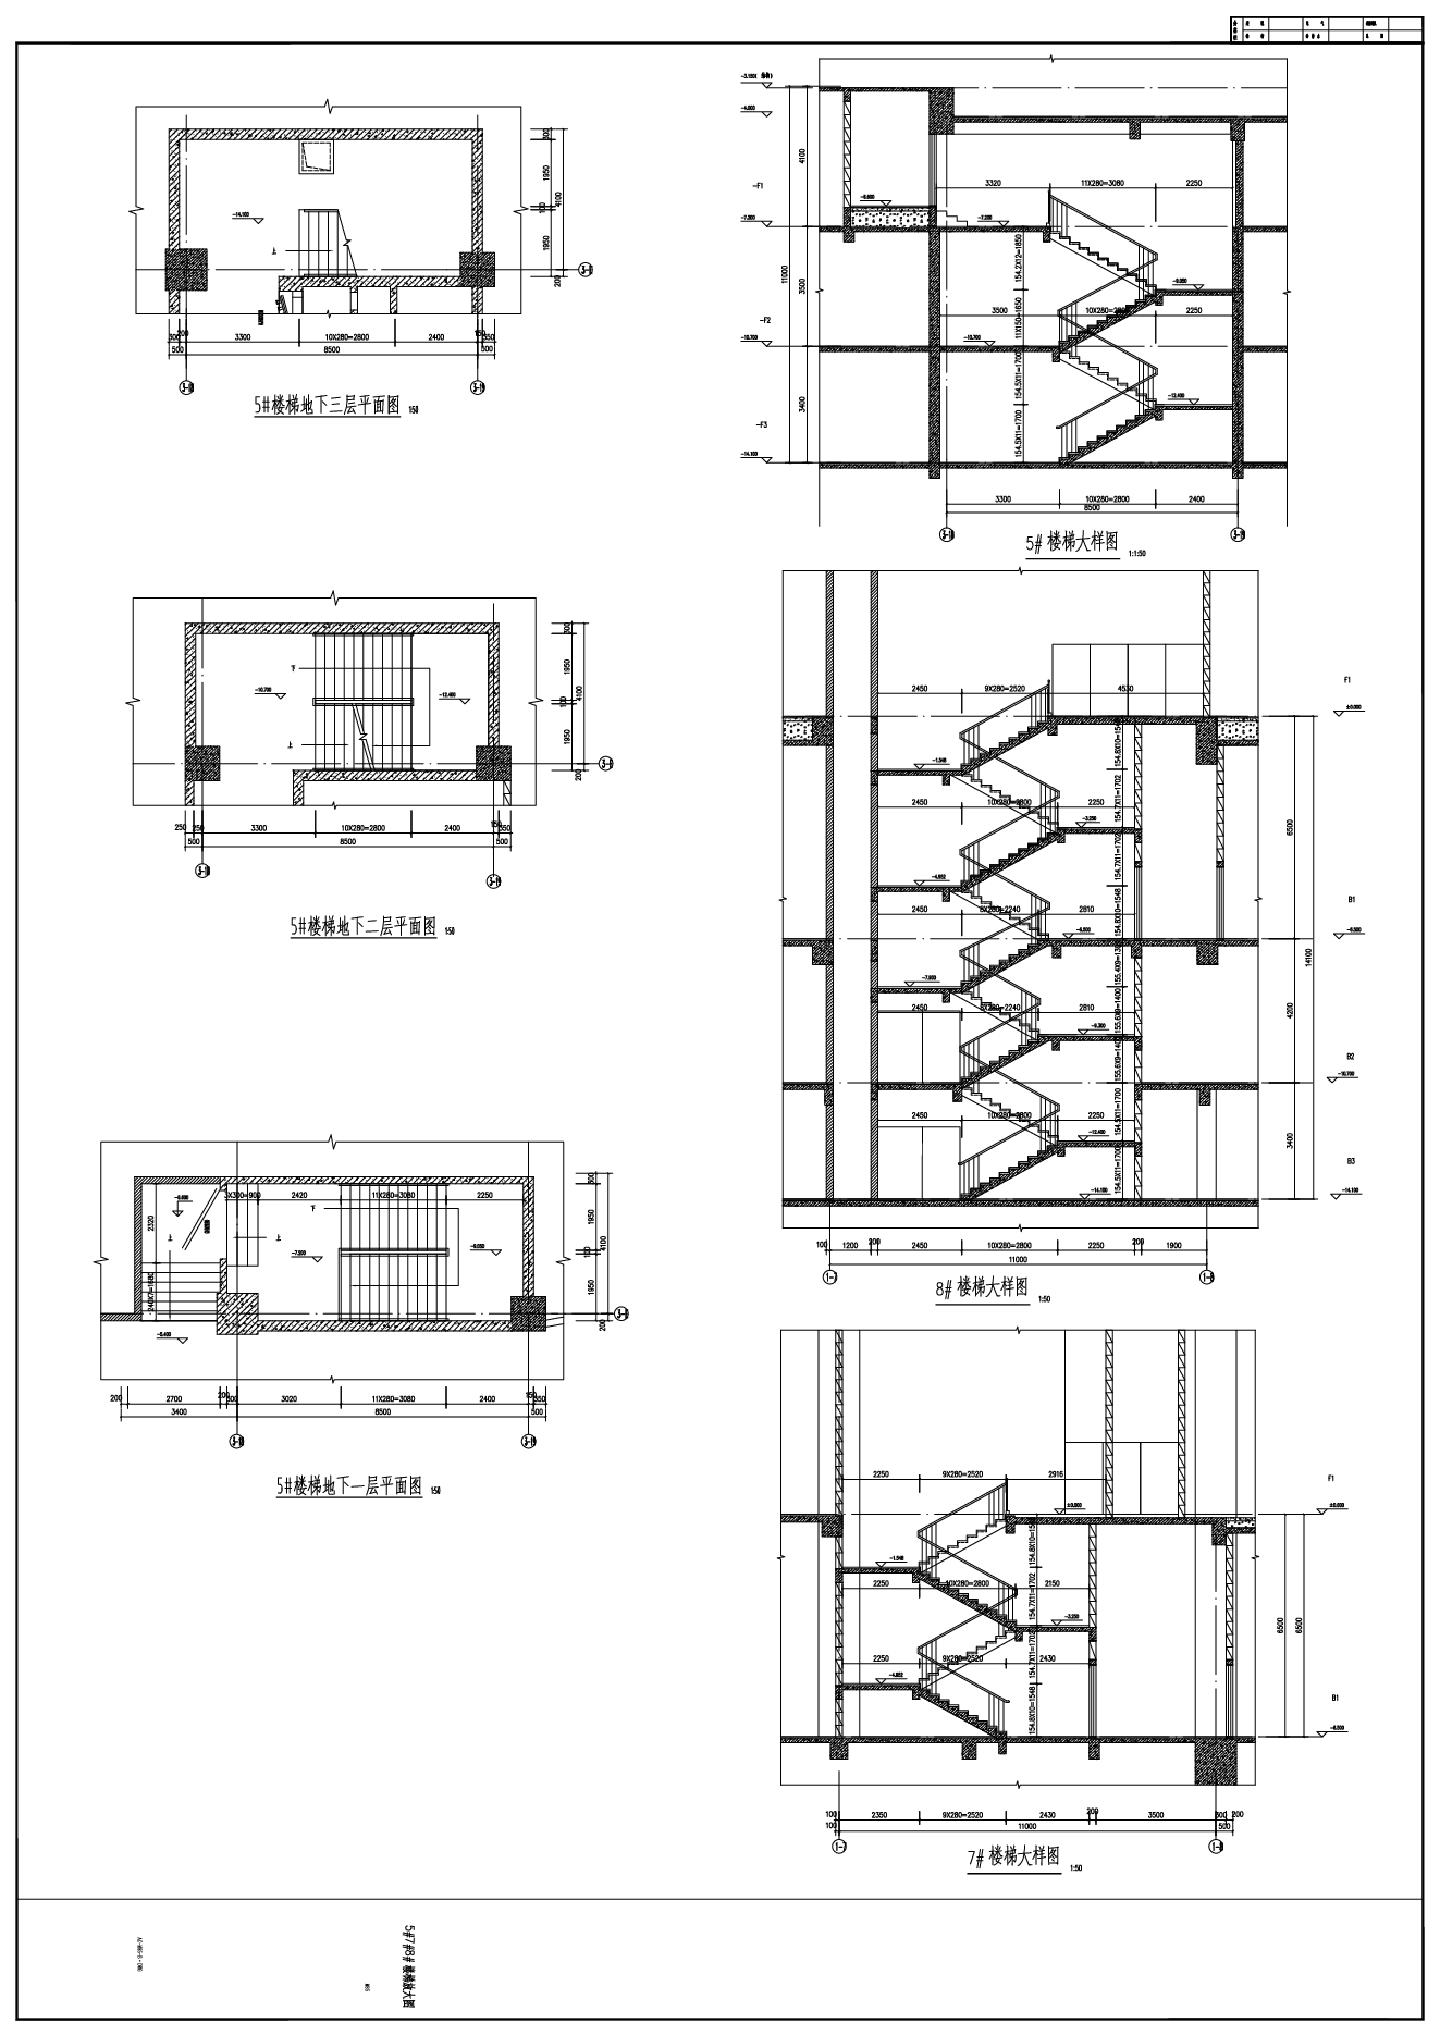 华润置地·万象城商业综合楼楼梯放大图CAD图.dwg